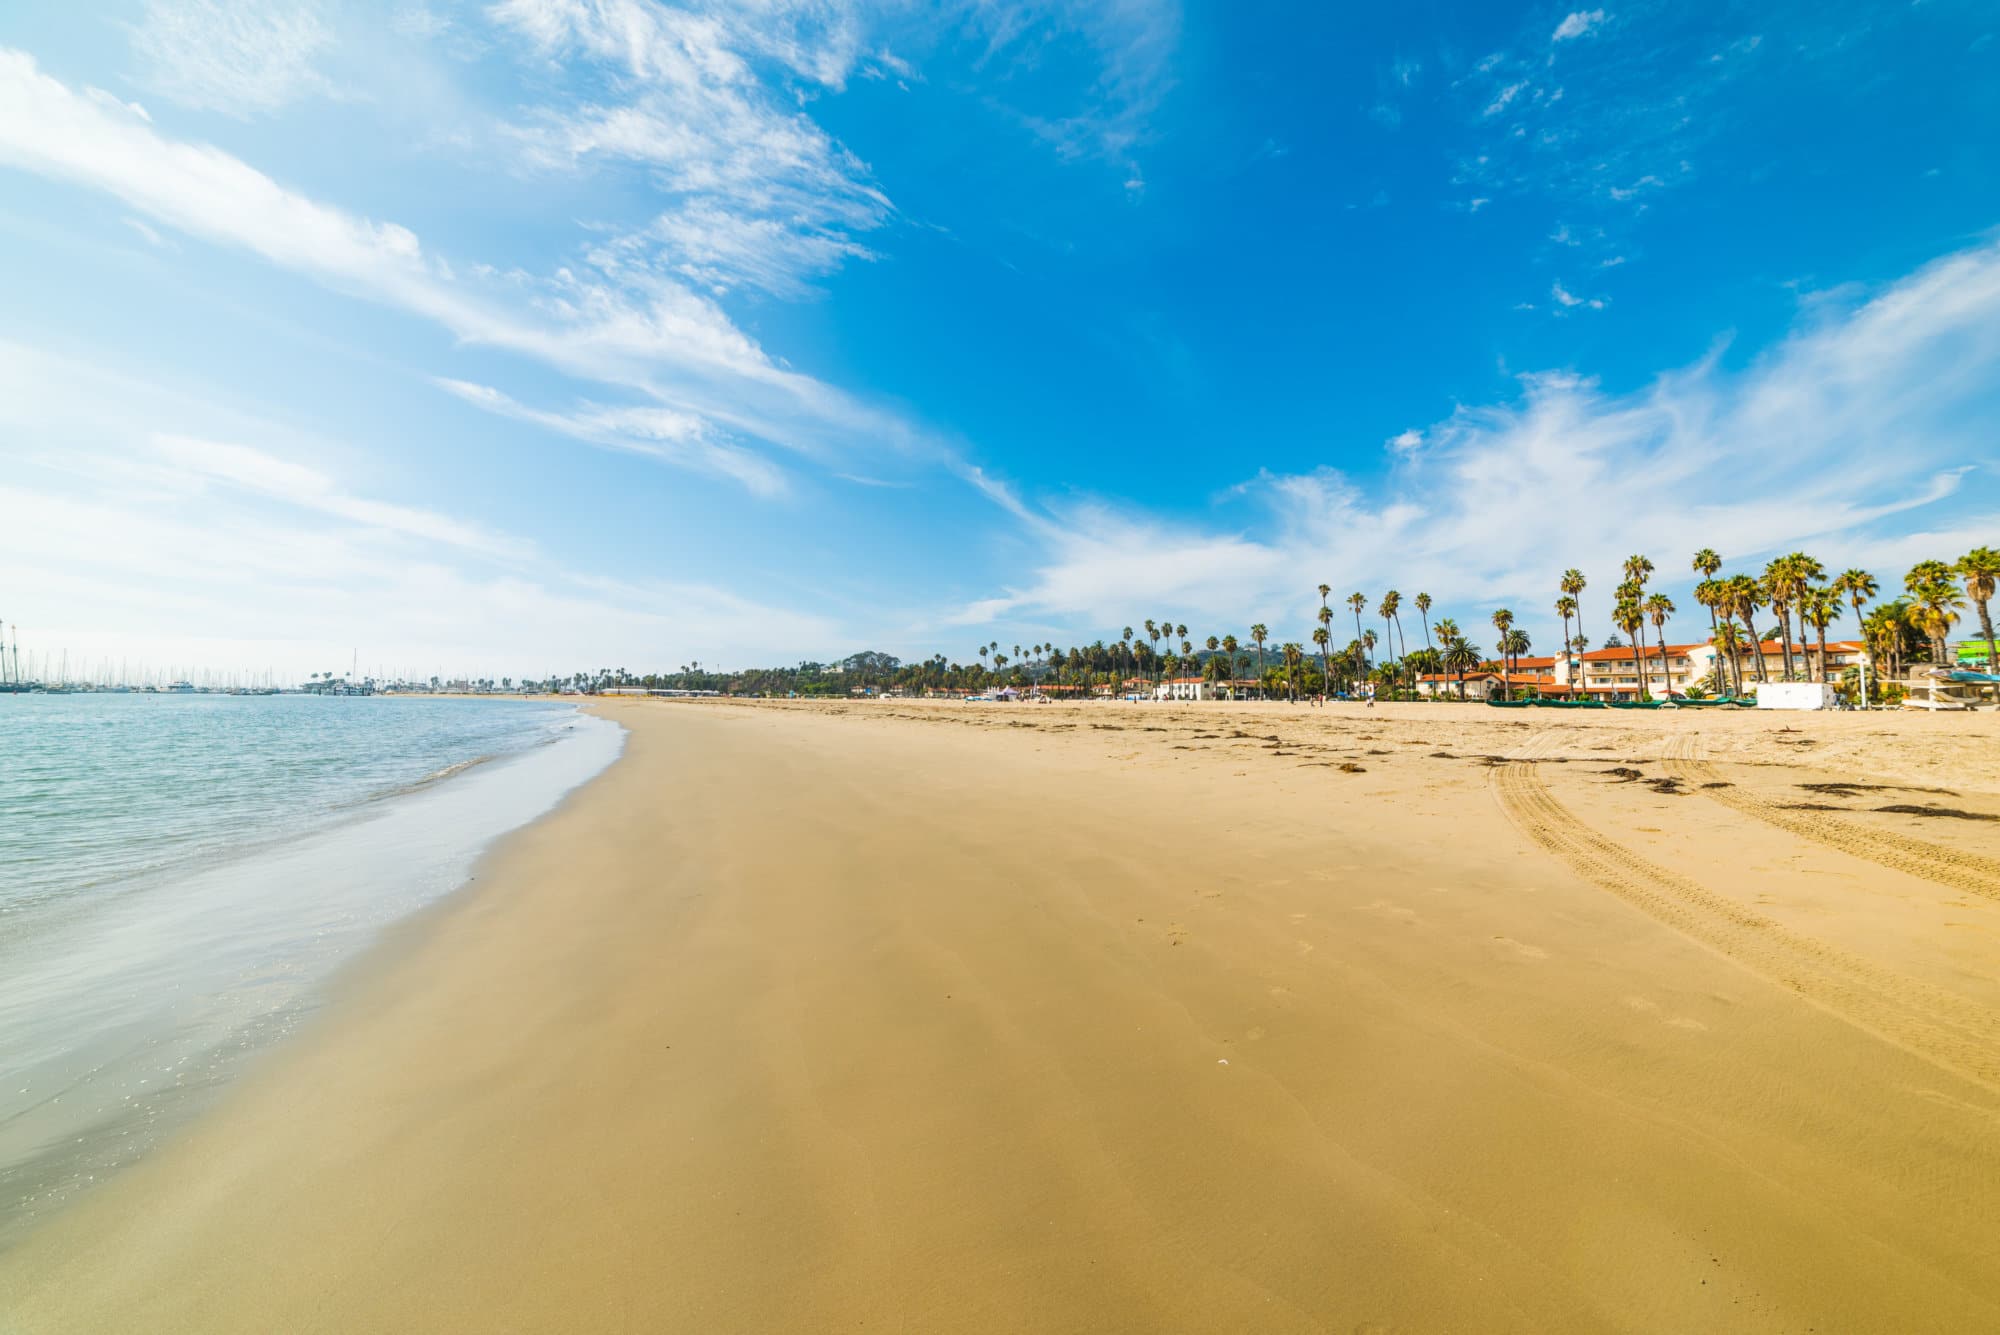 Stearns Wharf beach in Santa Barbara. Southern California, USA